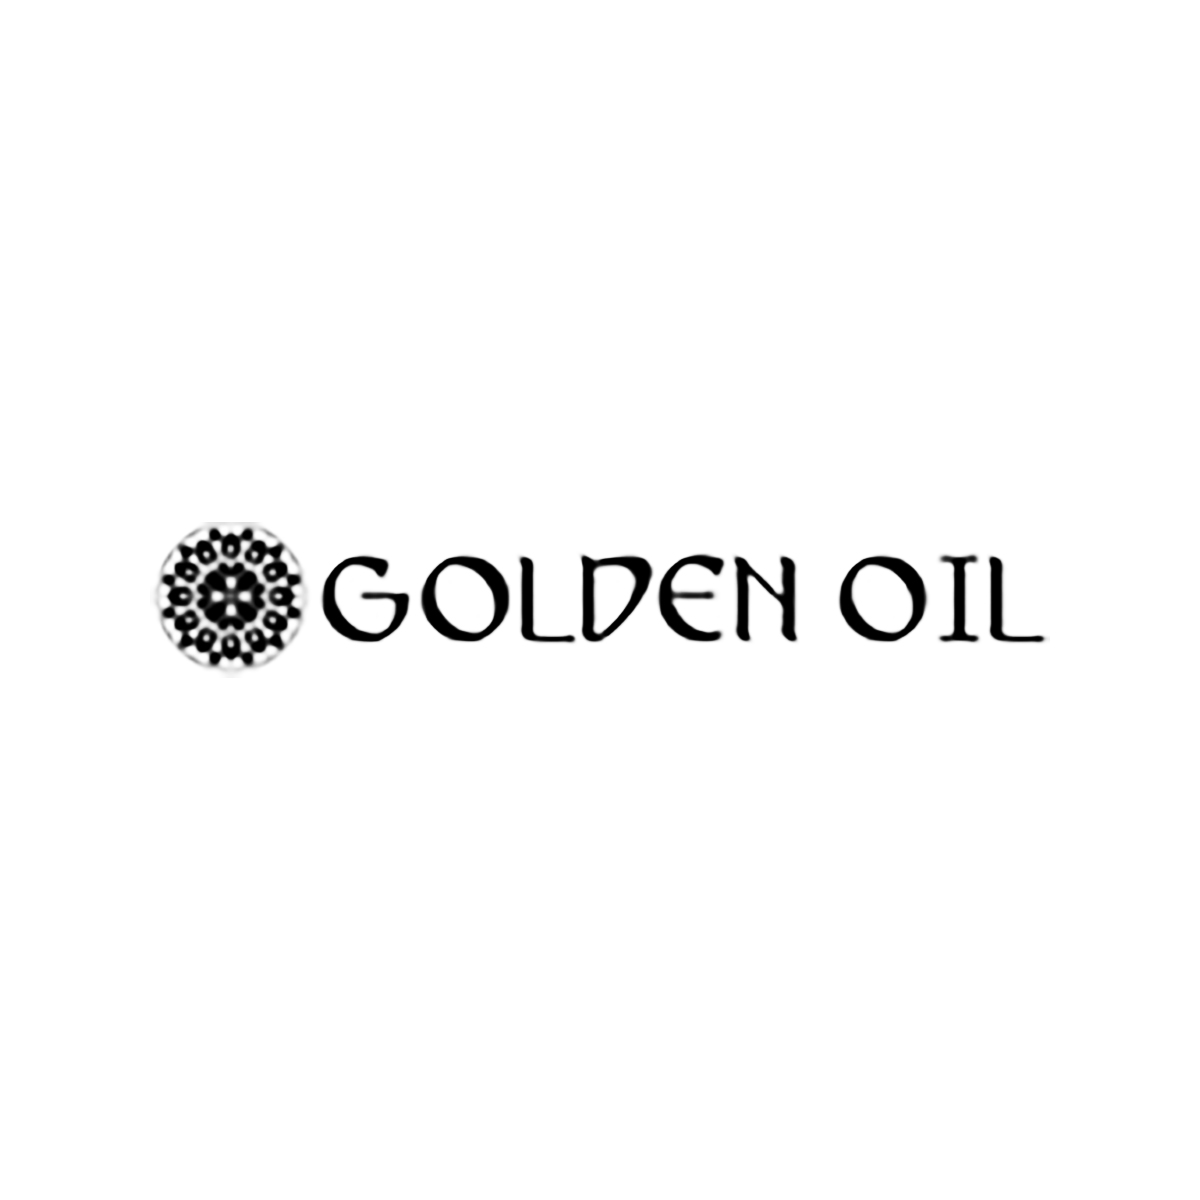 Golden oil